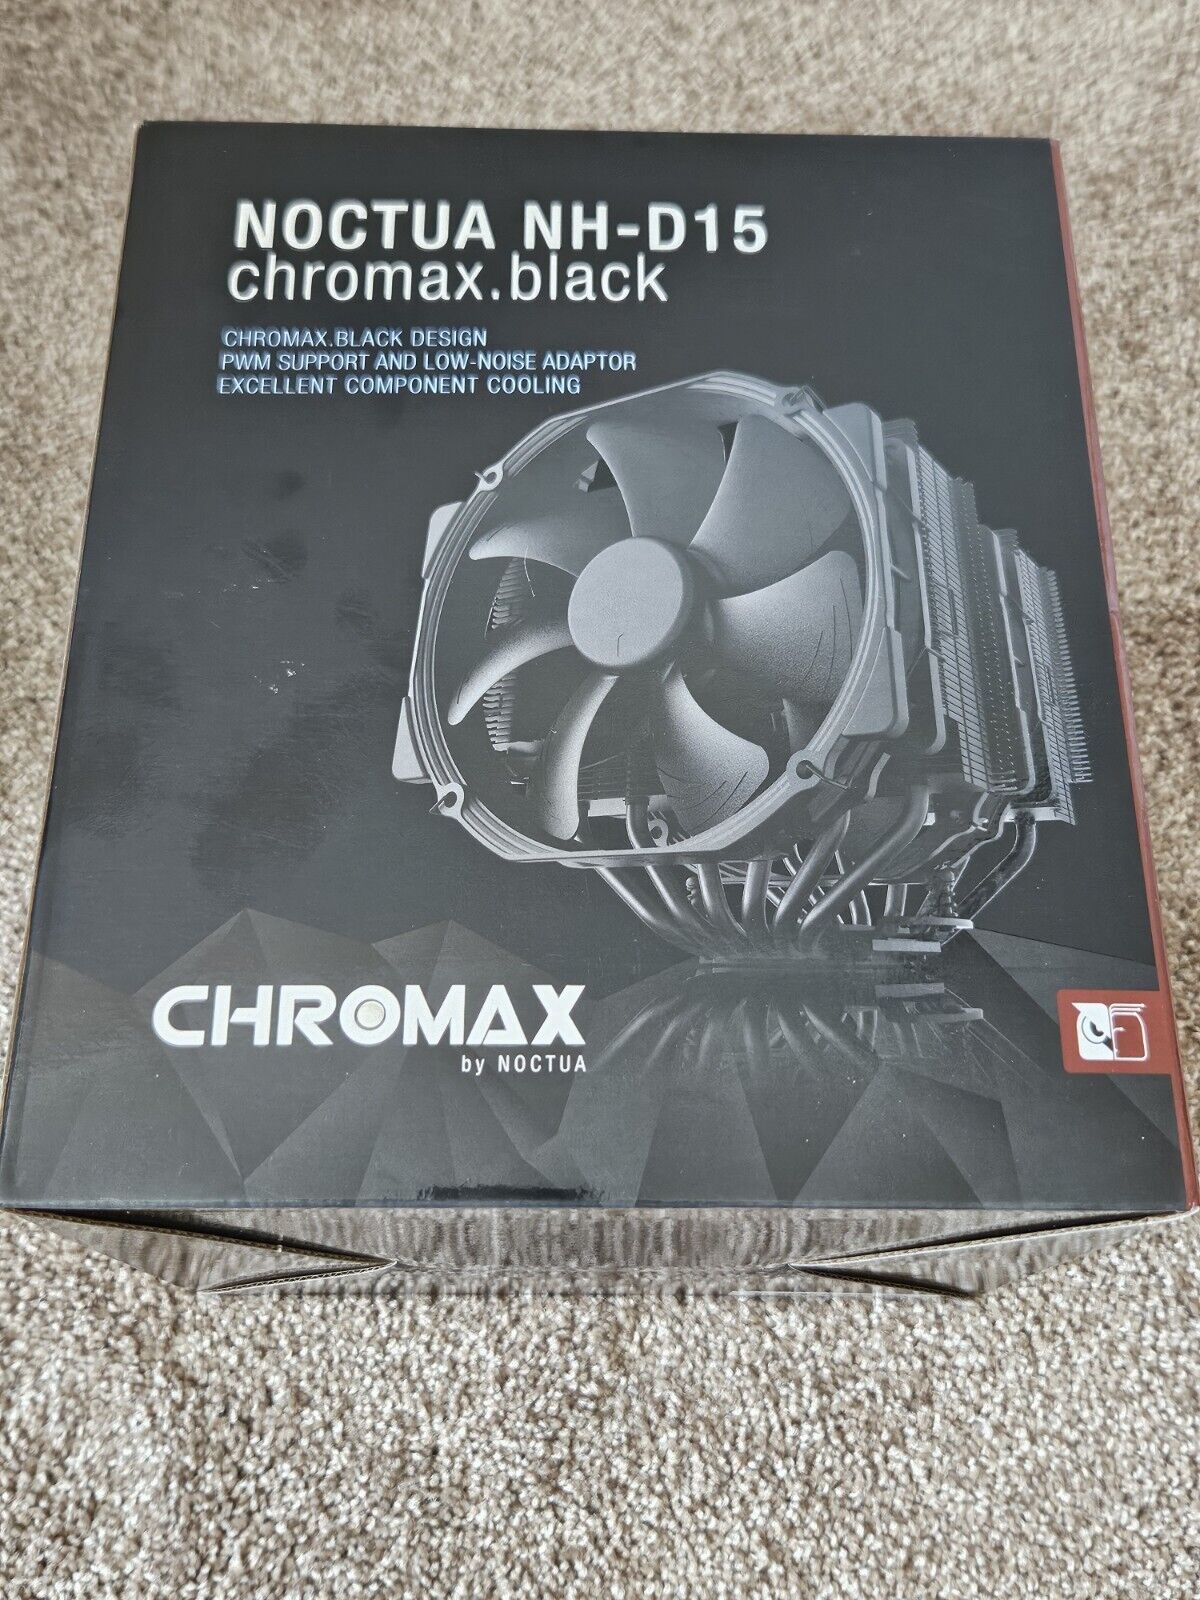 Noctua NH-D15 Chromax.Black - Unused, Open Box